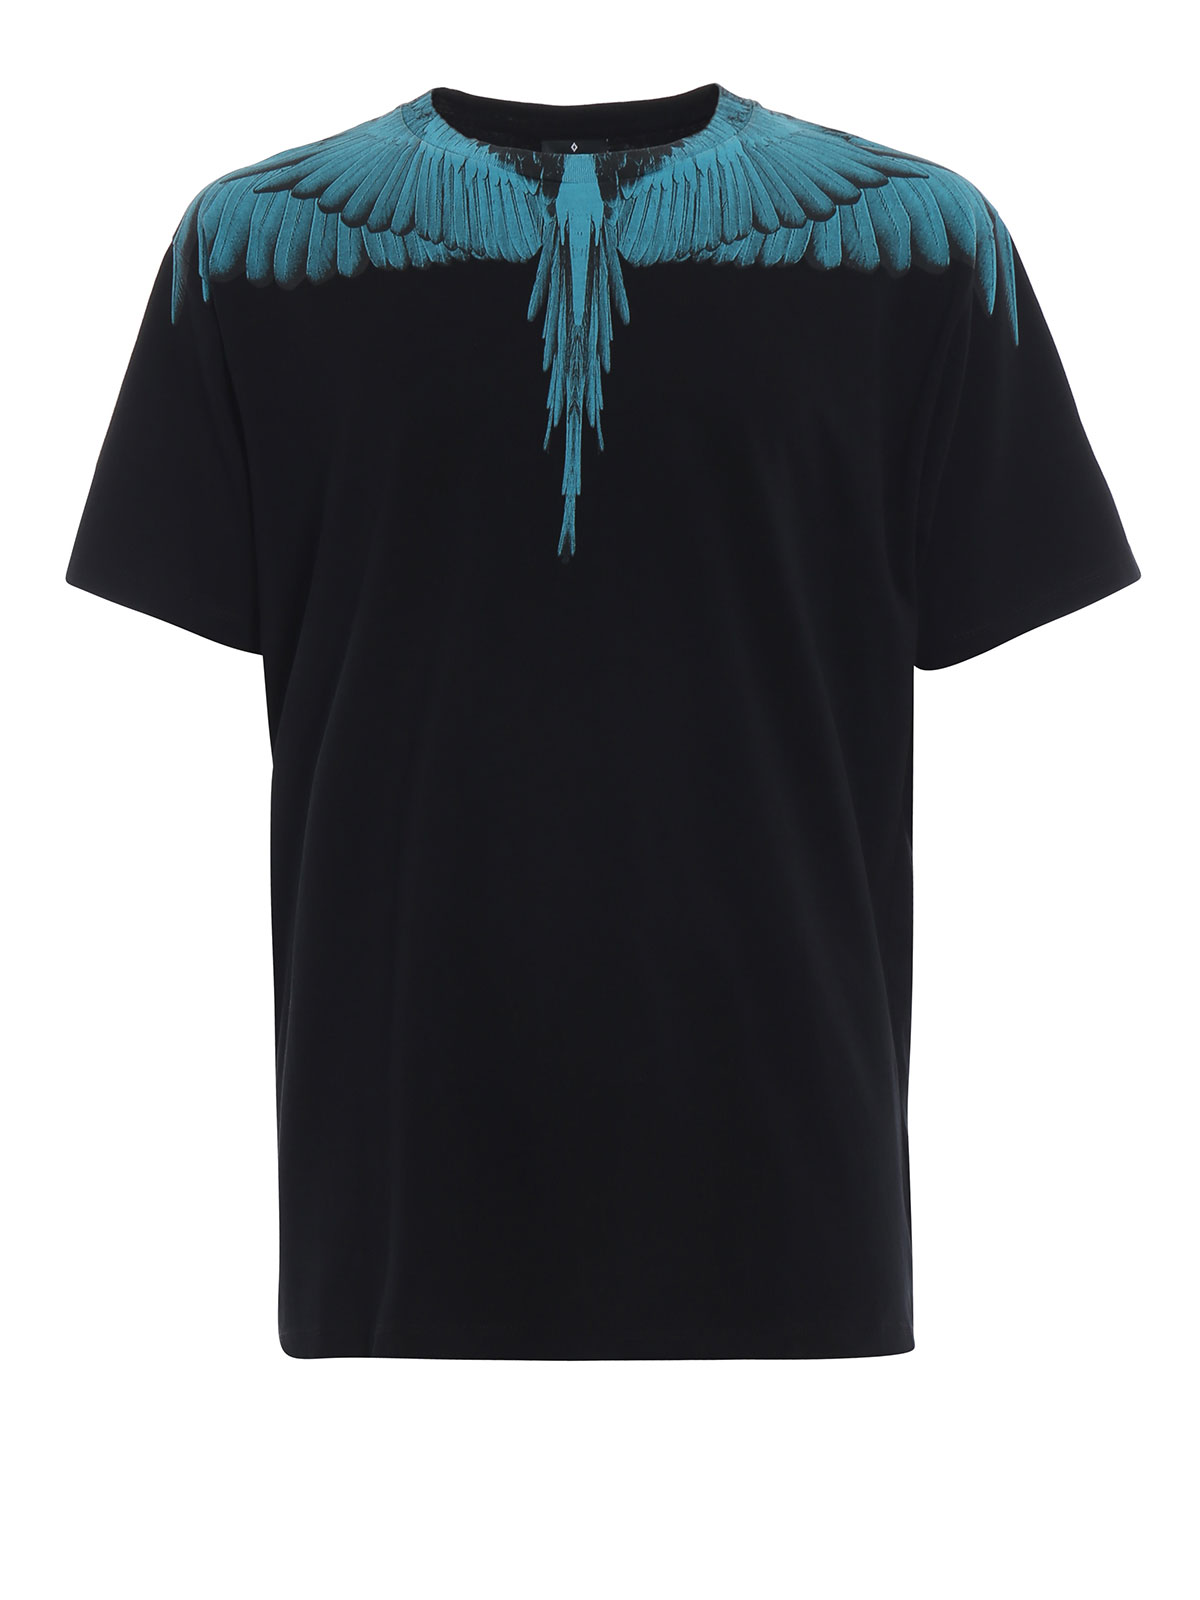 Marcelo Burlon - Turquoise Wings black cotton T-shirt - CMAA018E180010011031